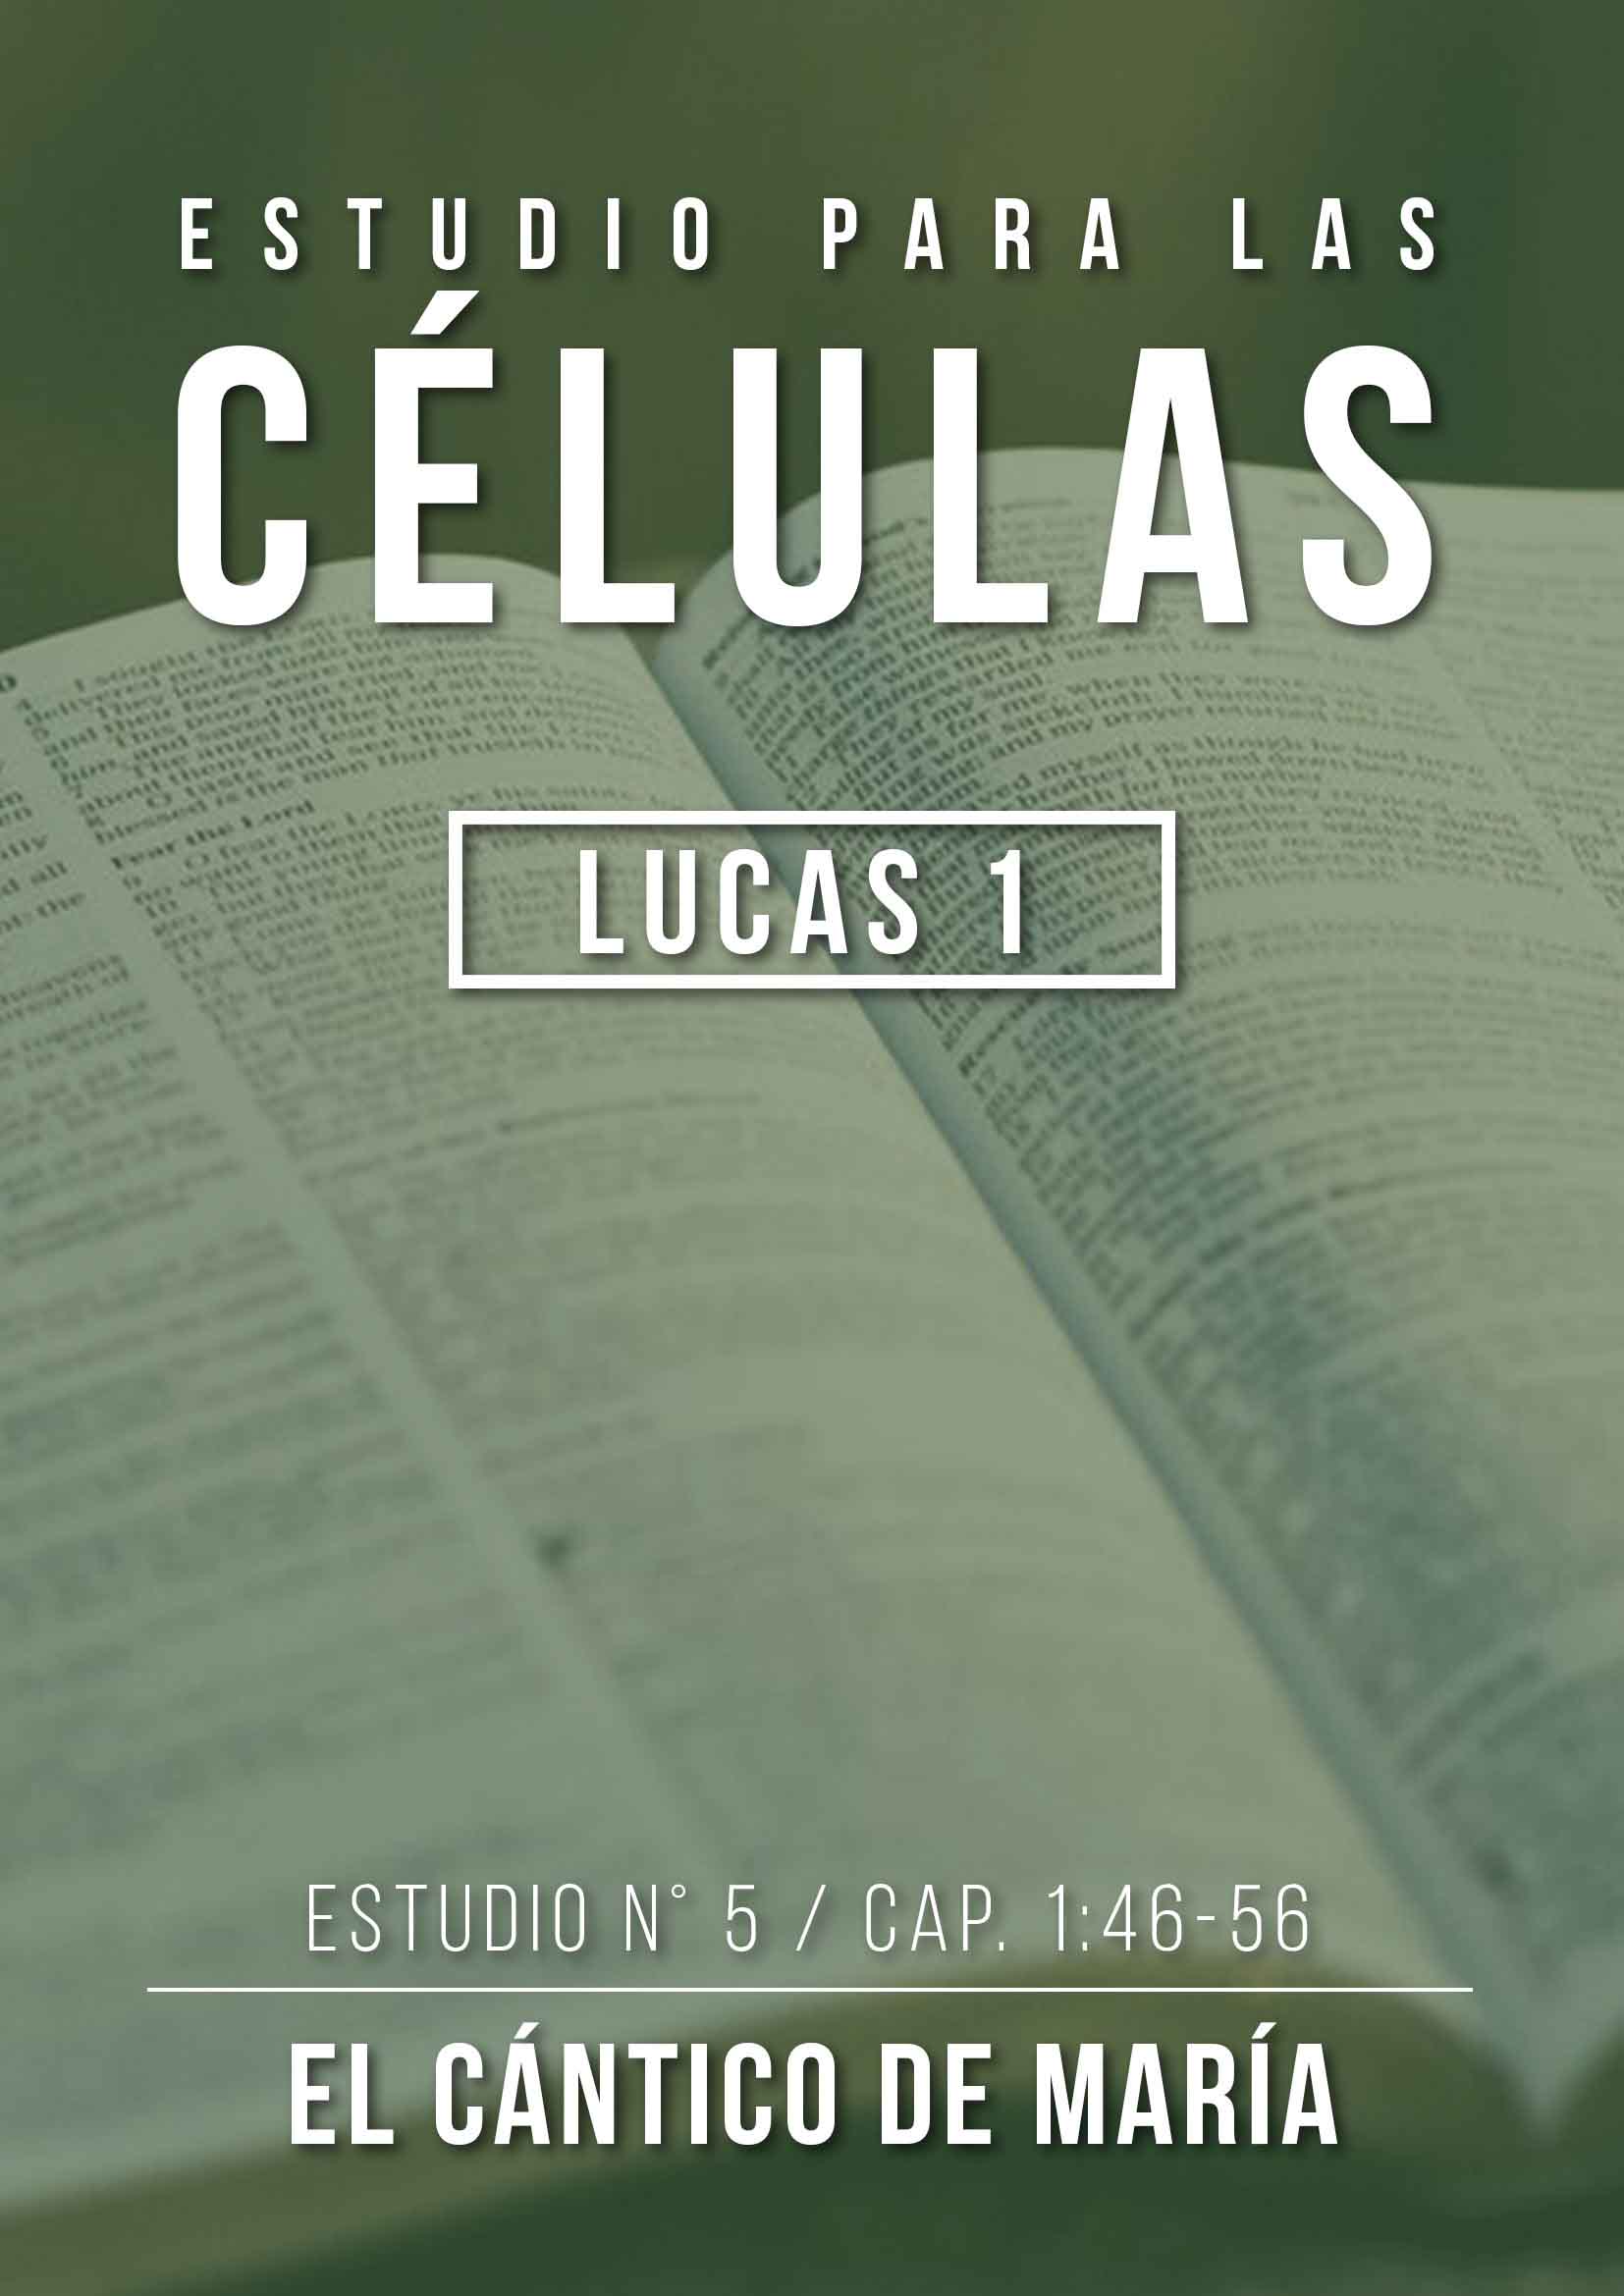 Estudio 5 Cap. 1:46-56